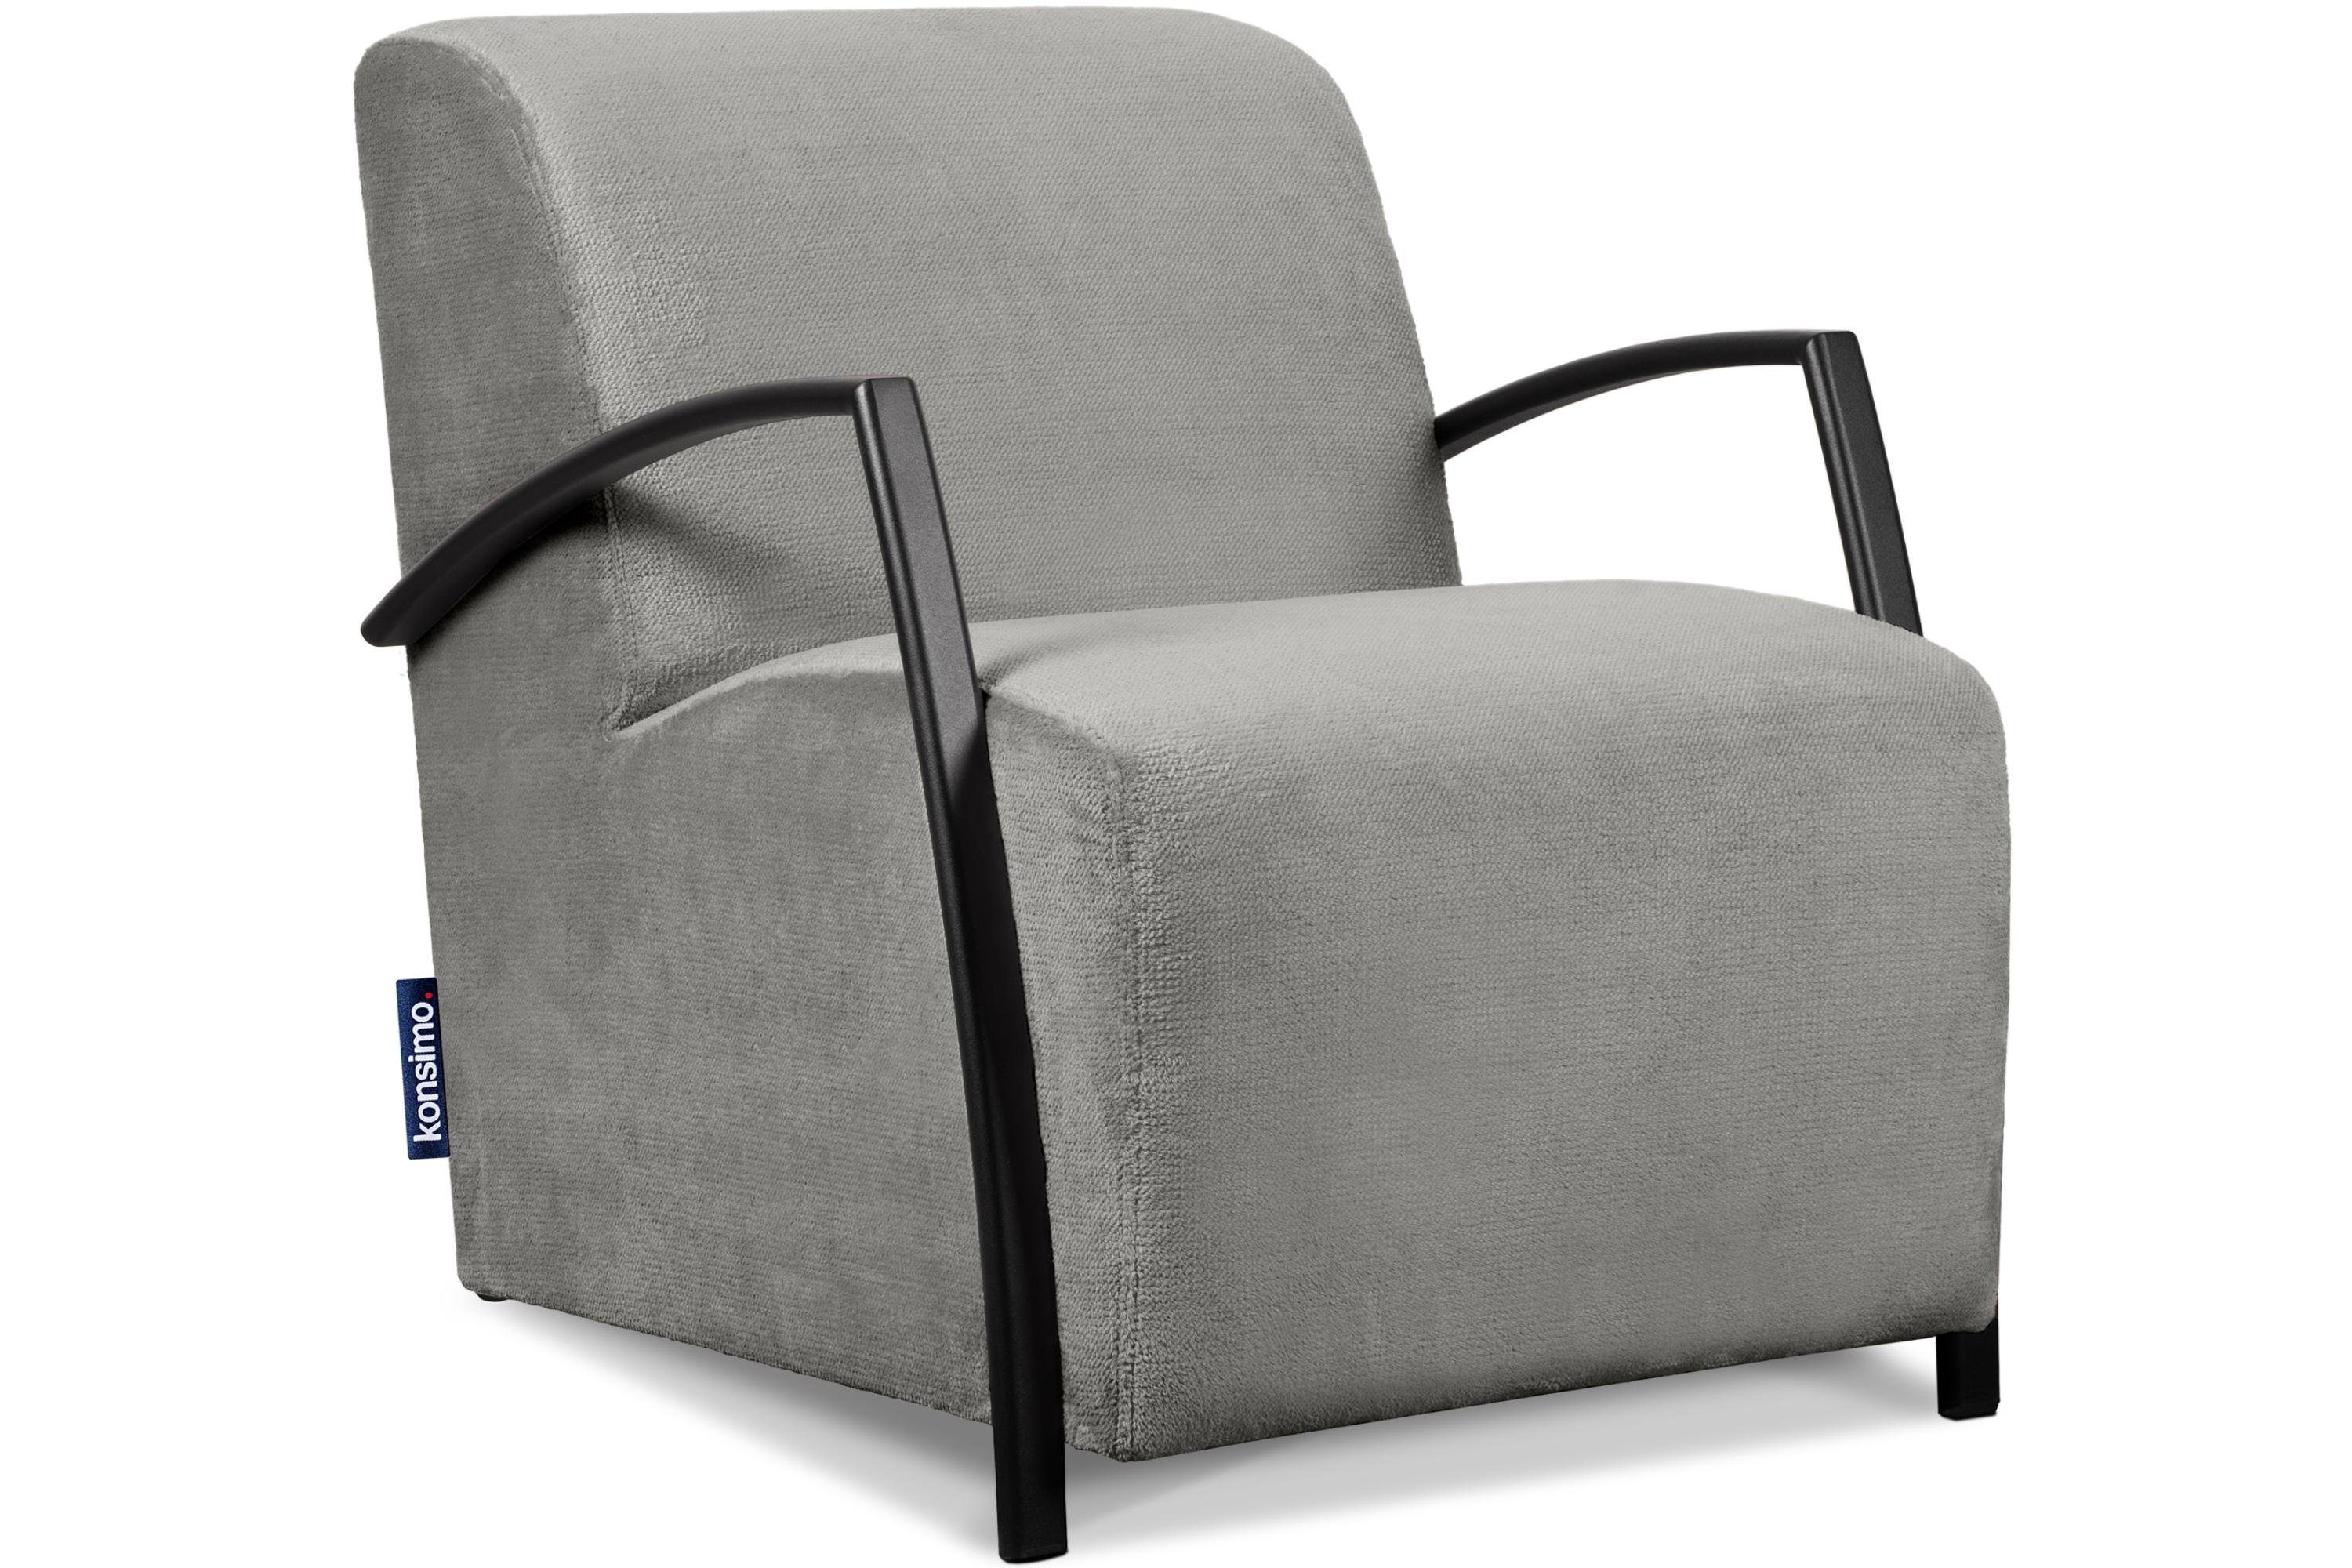 Konsimo Cocktailsessel CARO Sessel, mit gewellter Feder im Sitz, ergonomische Form für bequemes Sitzen grau | grau